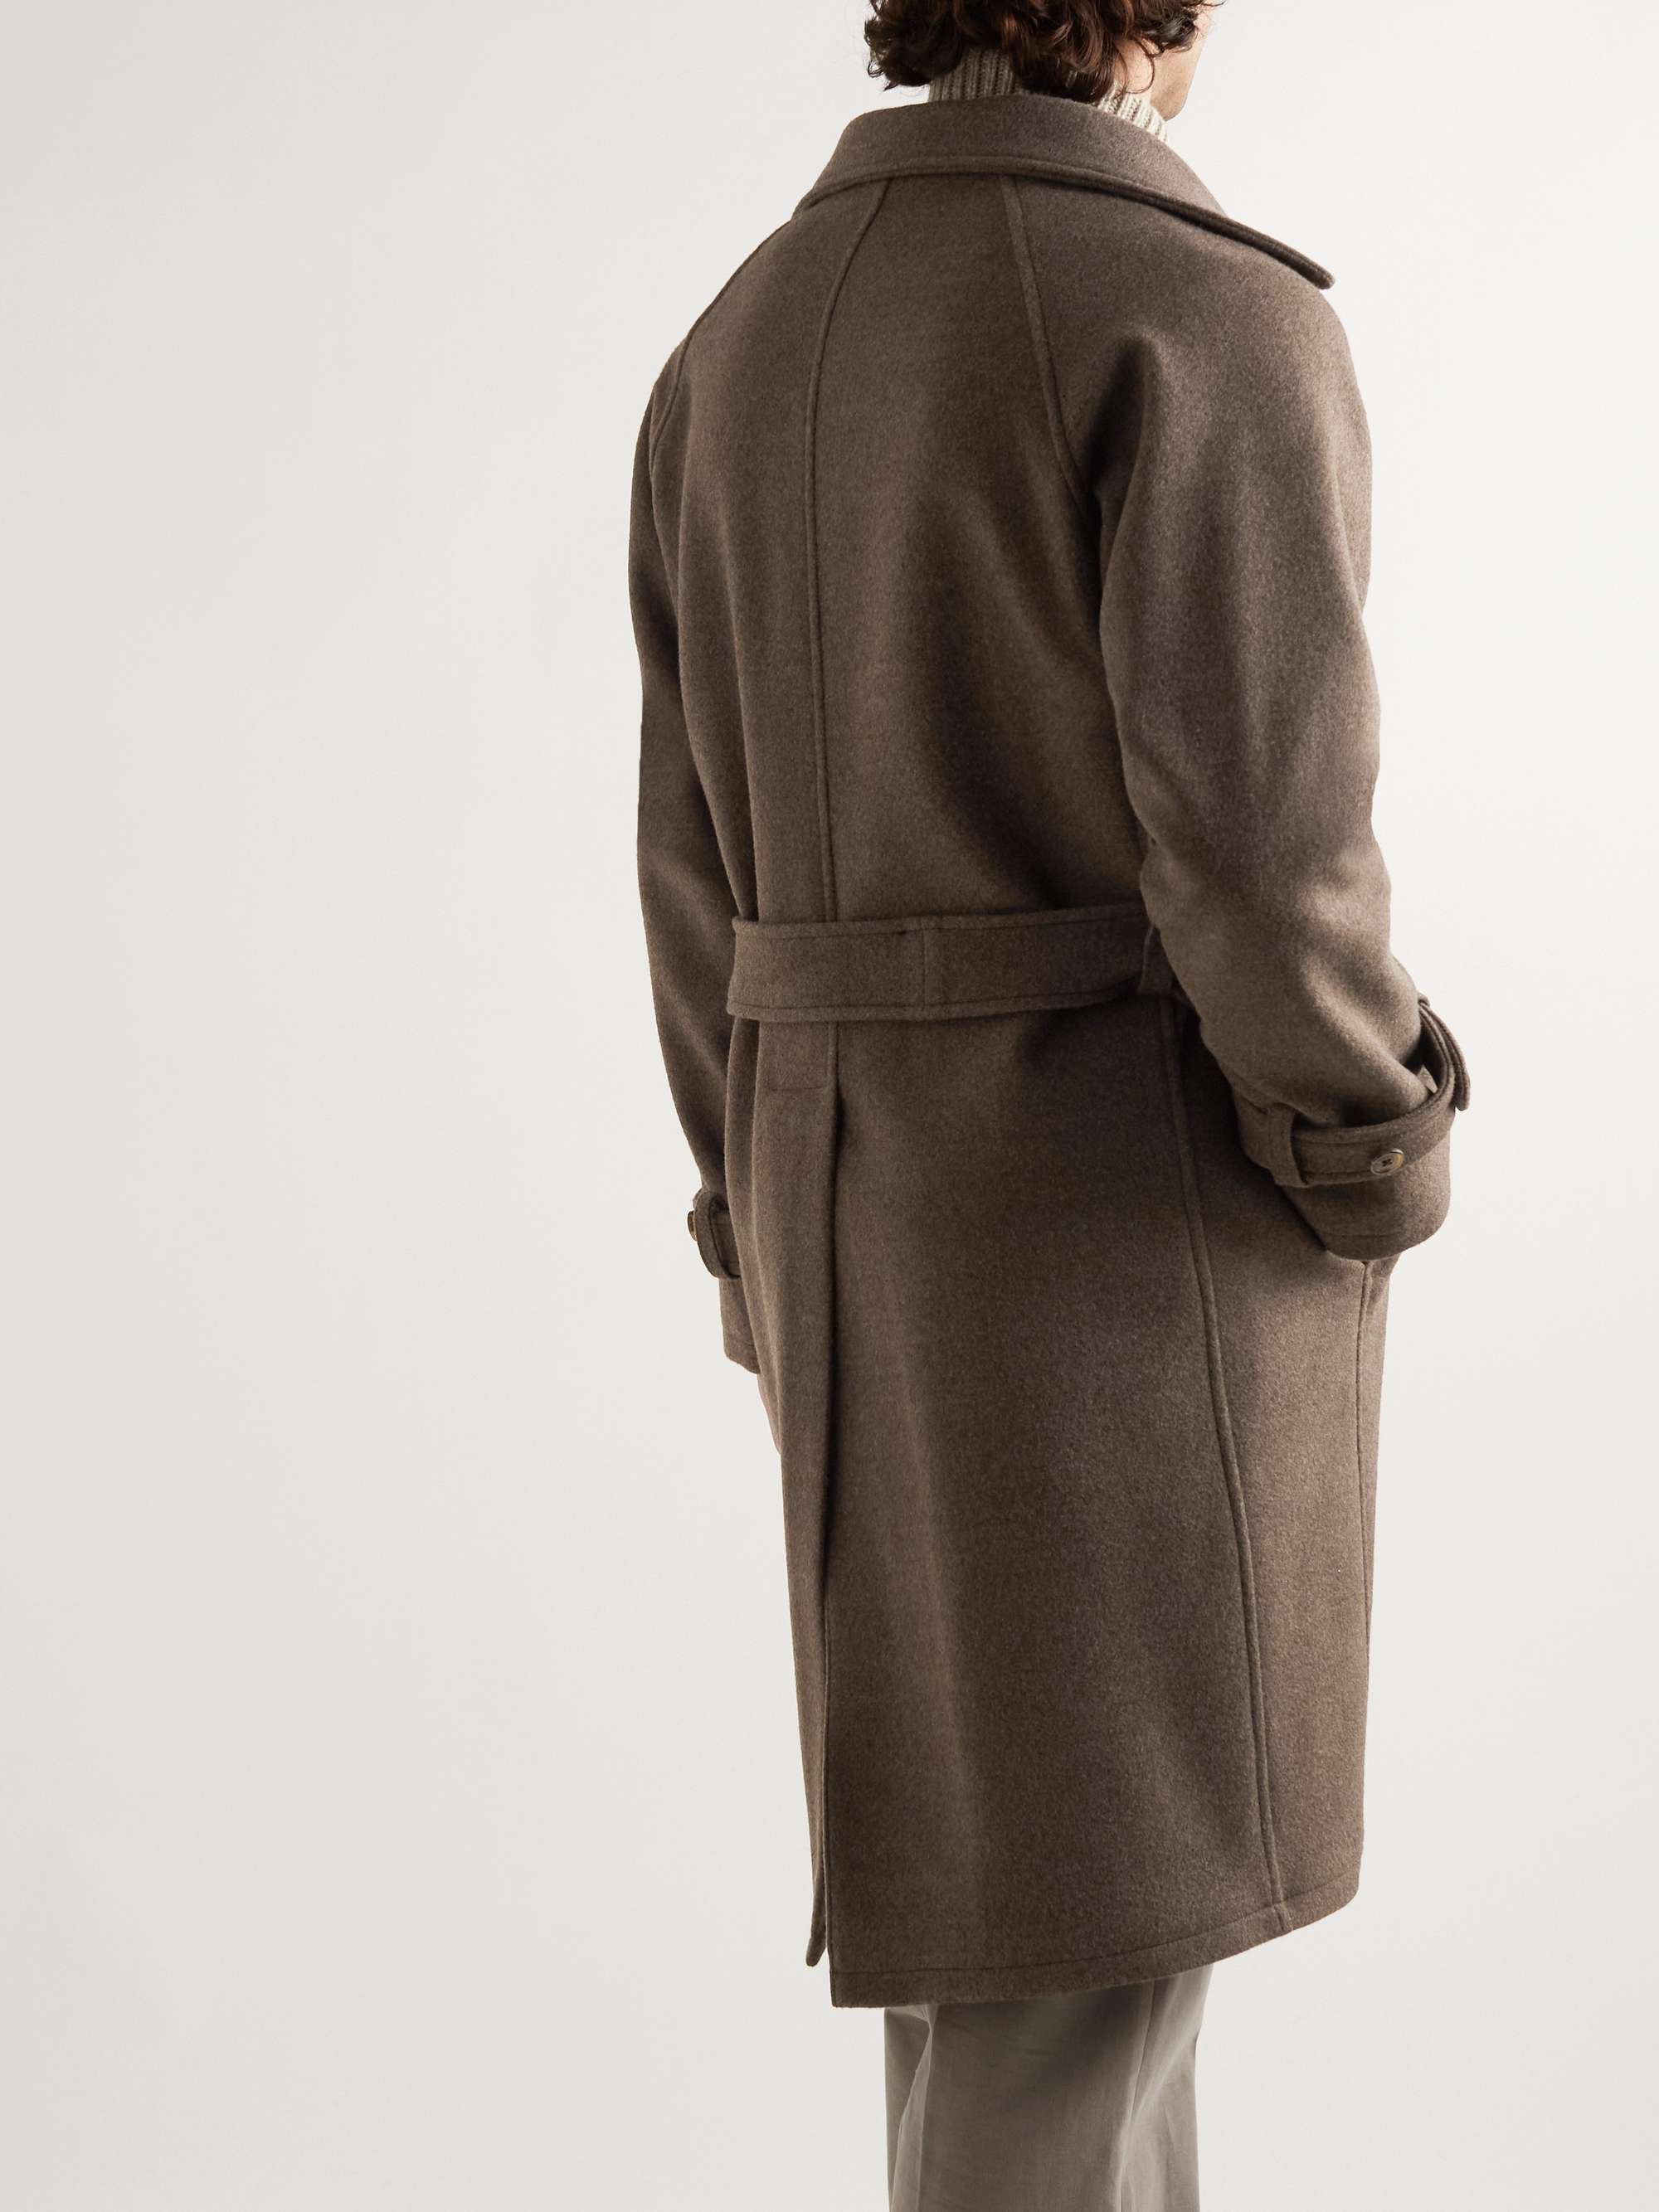 STÒFFA Belted Wool-Felt Coat